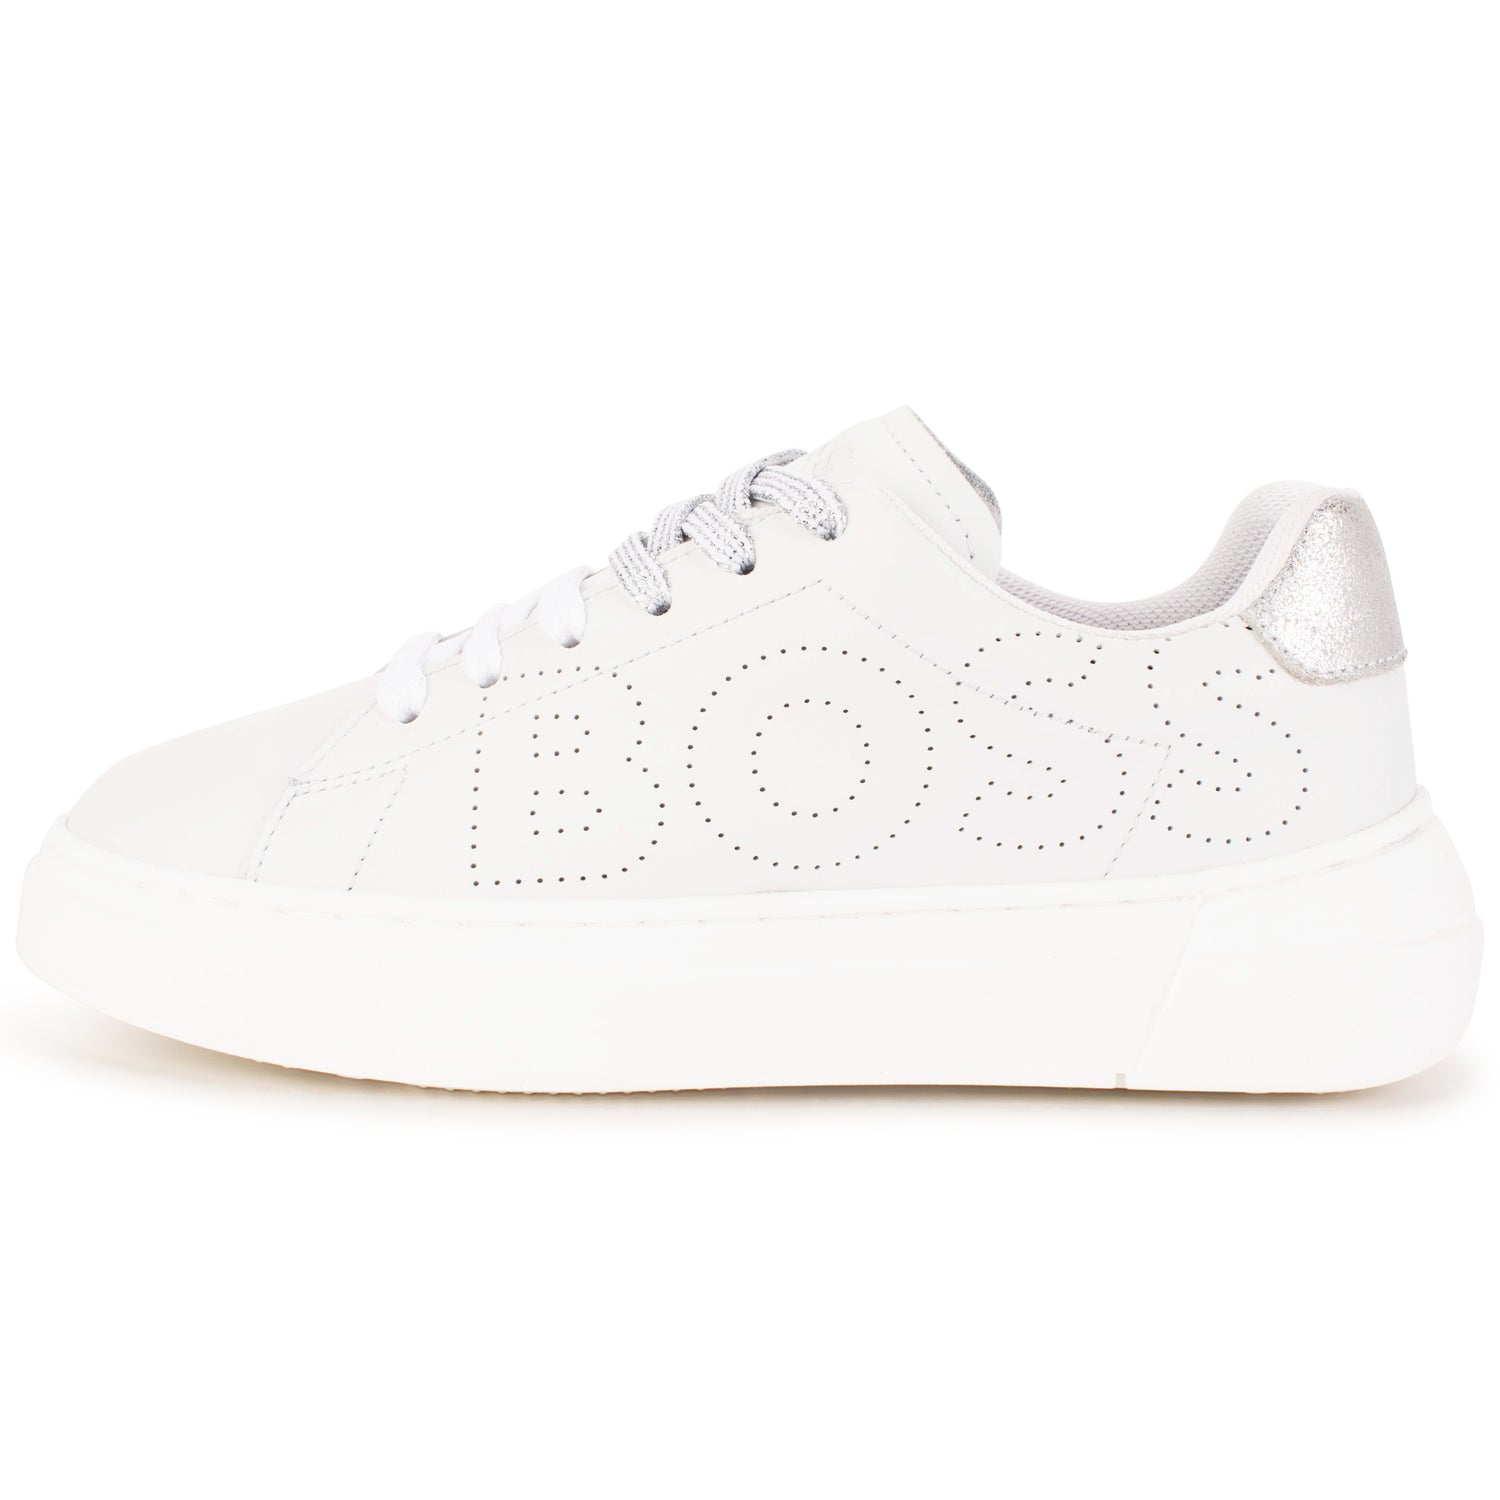 verlamming lid Picknicken Hugo Boss White Silver Lace Sneaker J19071 – Laced Shoe Inc